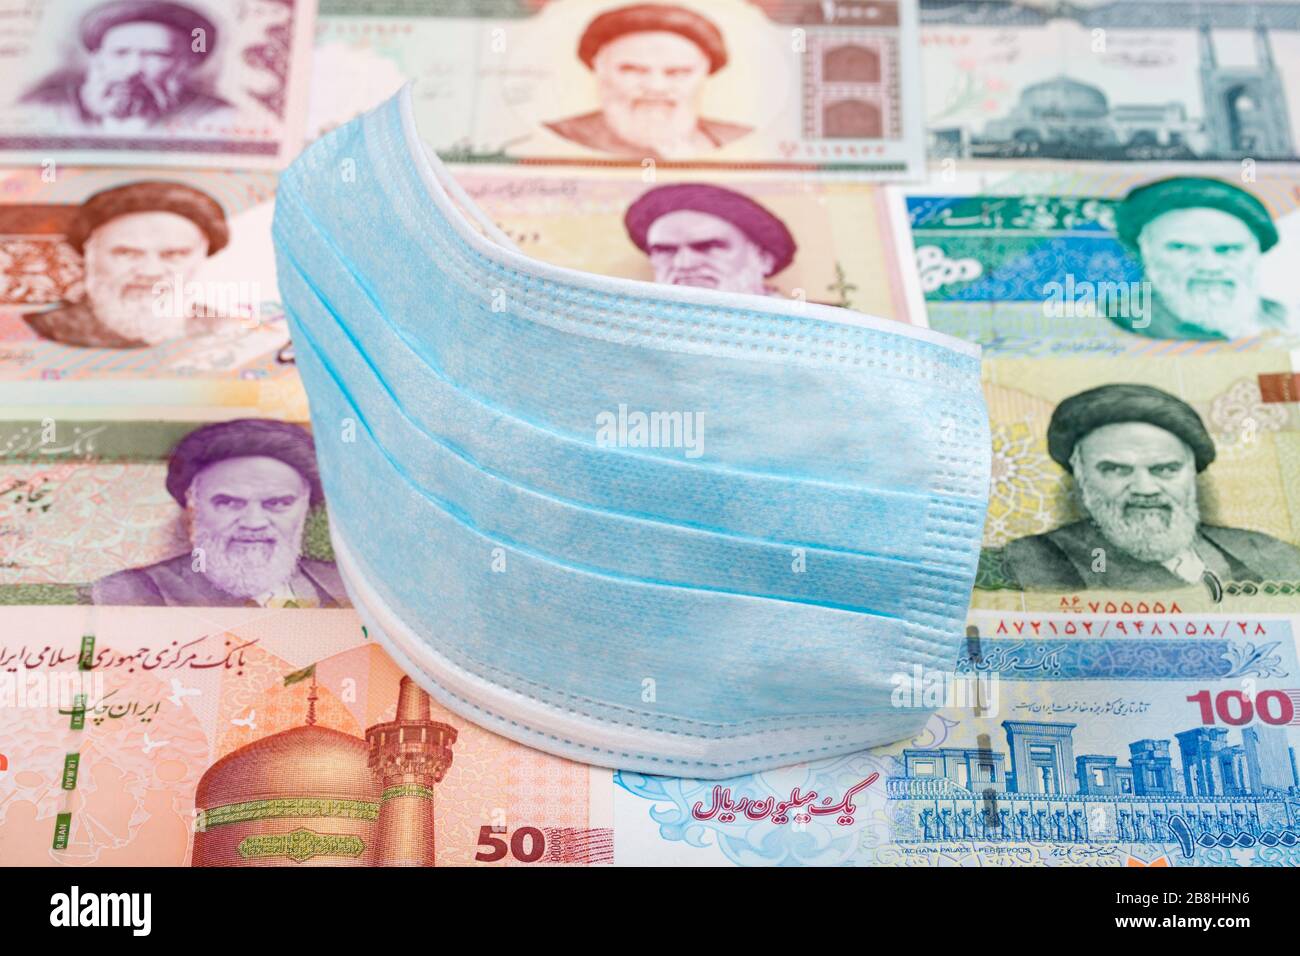 Schutzmaske auf iranischem Geld - Rial Stockfoto